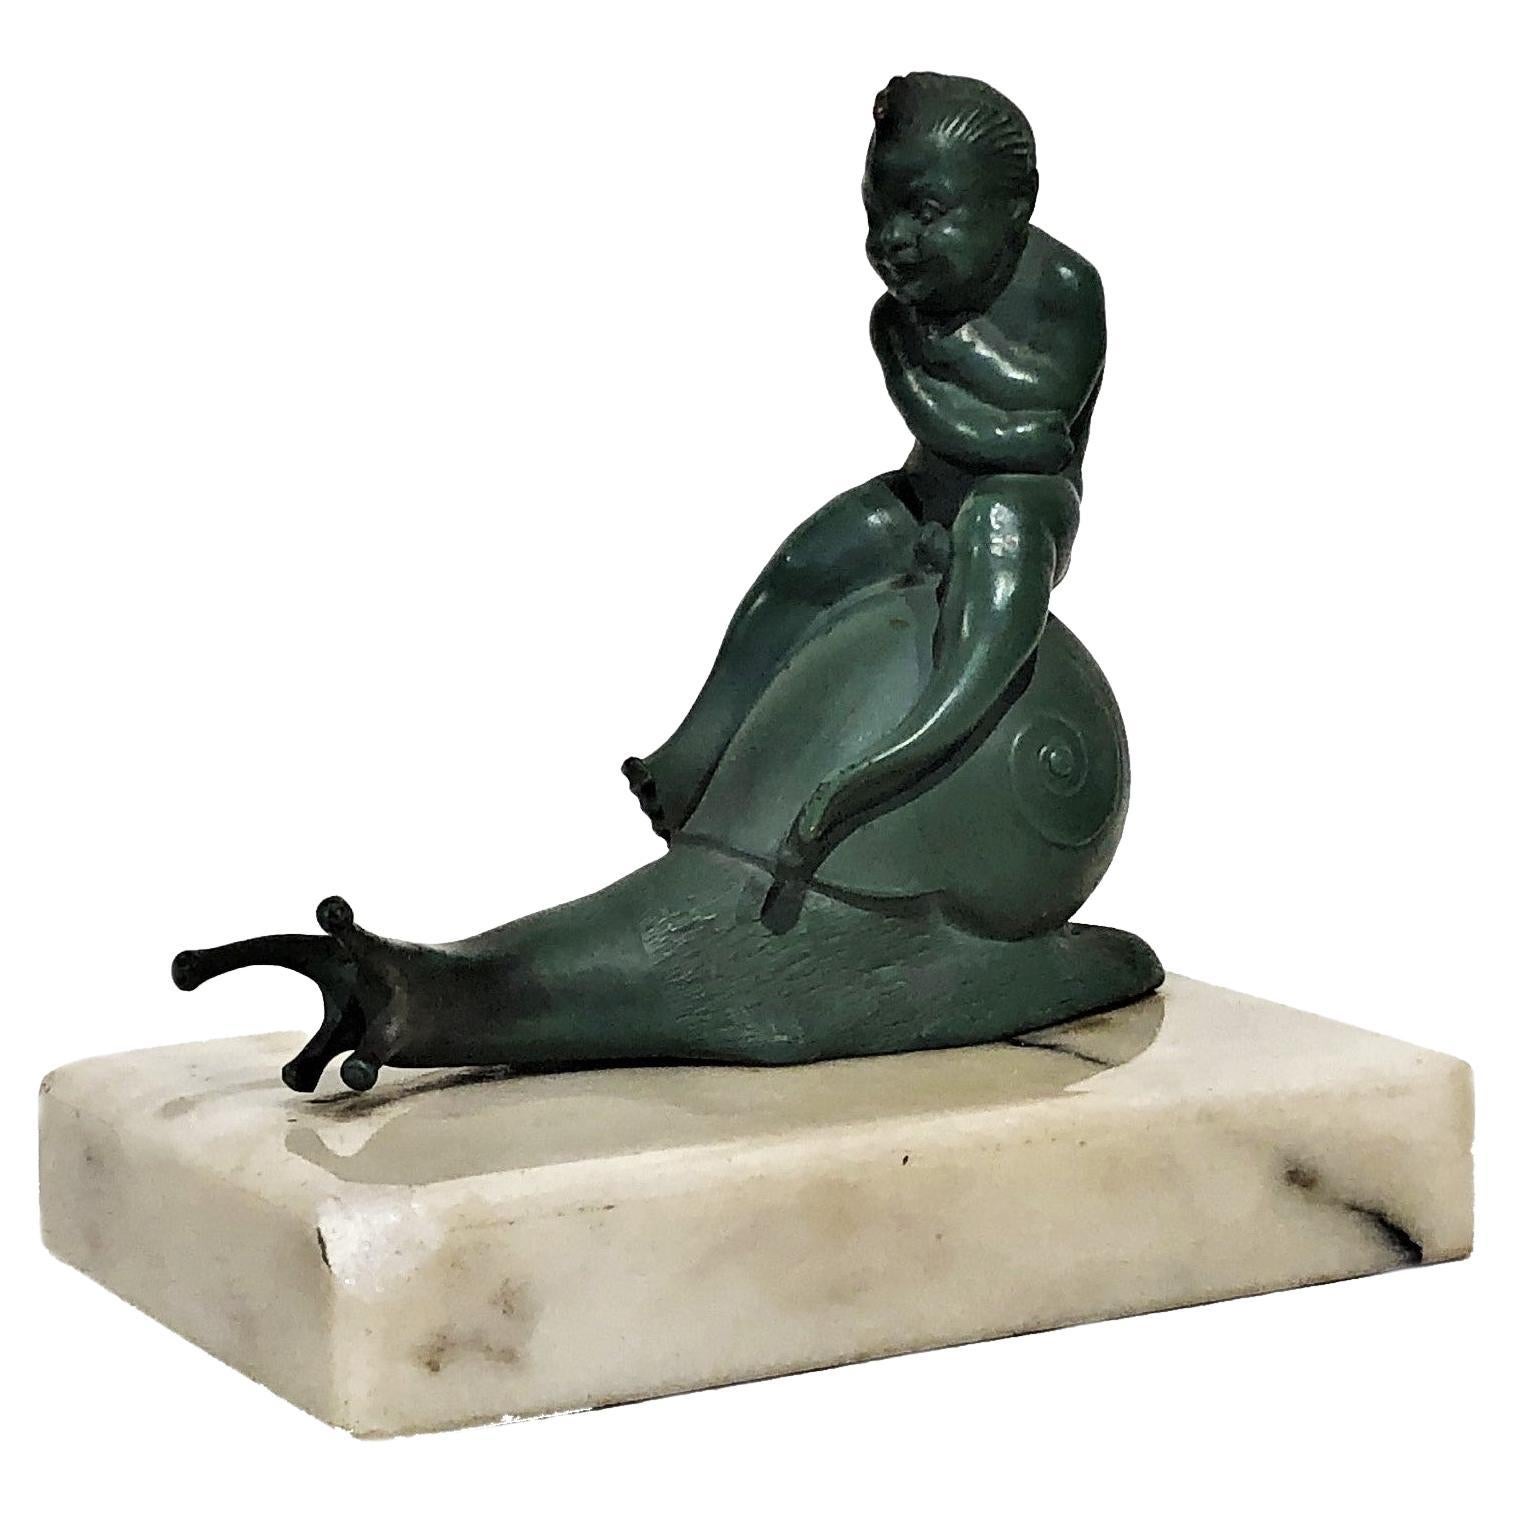 Österreichischer Jugendstil Vienna Bronze Skulptur Briefbeschwerer von Carl Fiala, ca. 1910